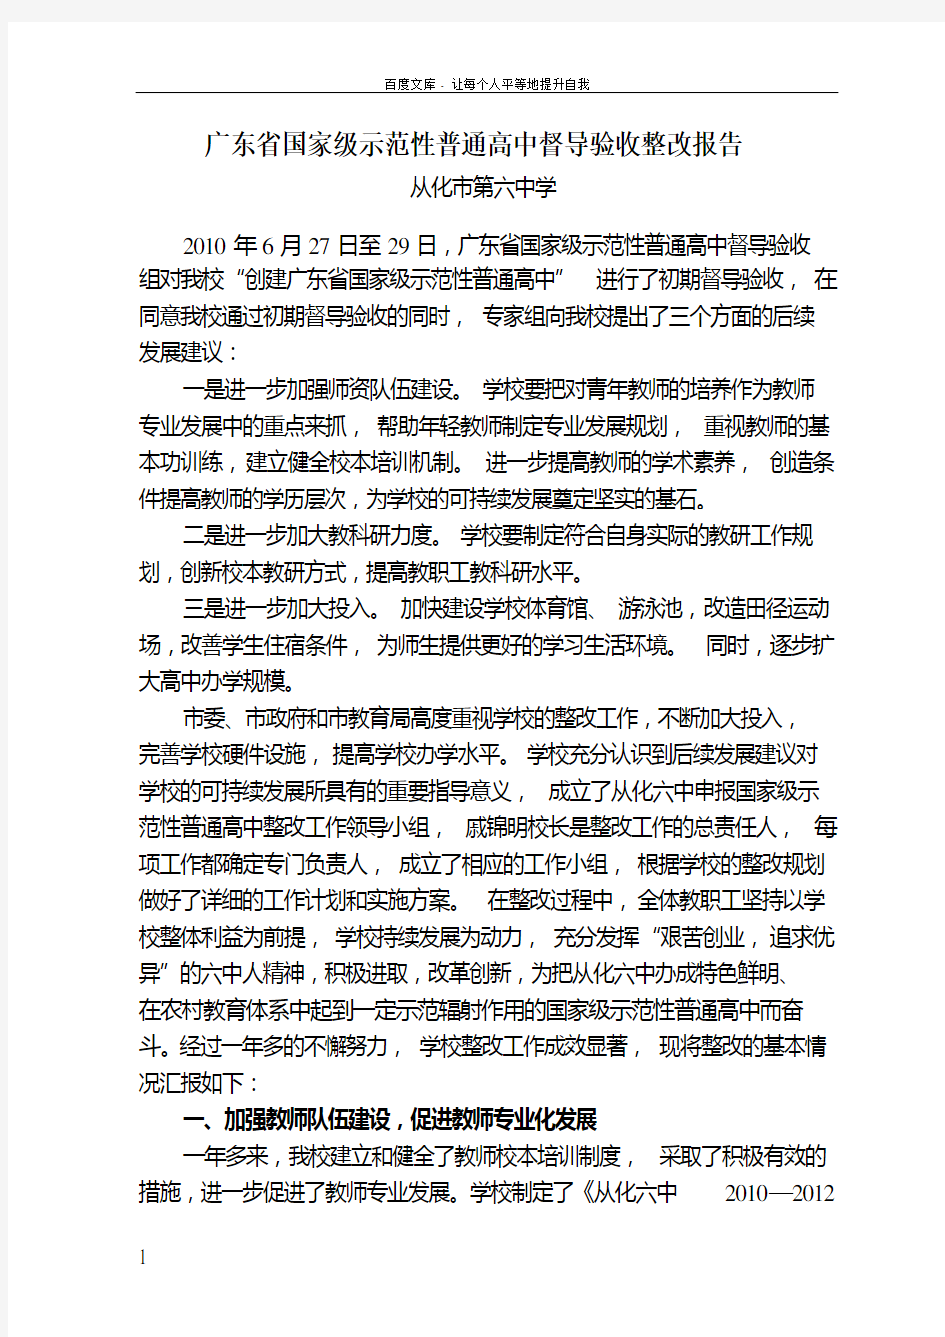 9广东省国家级示范性普通高中督导验收整改报告